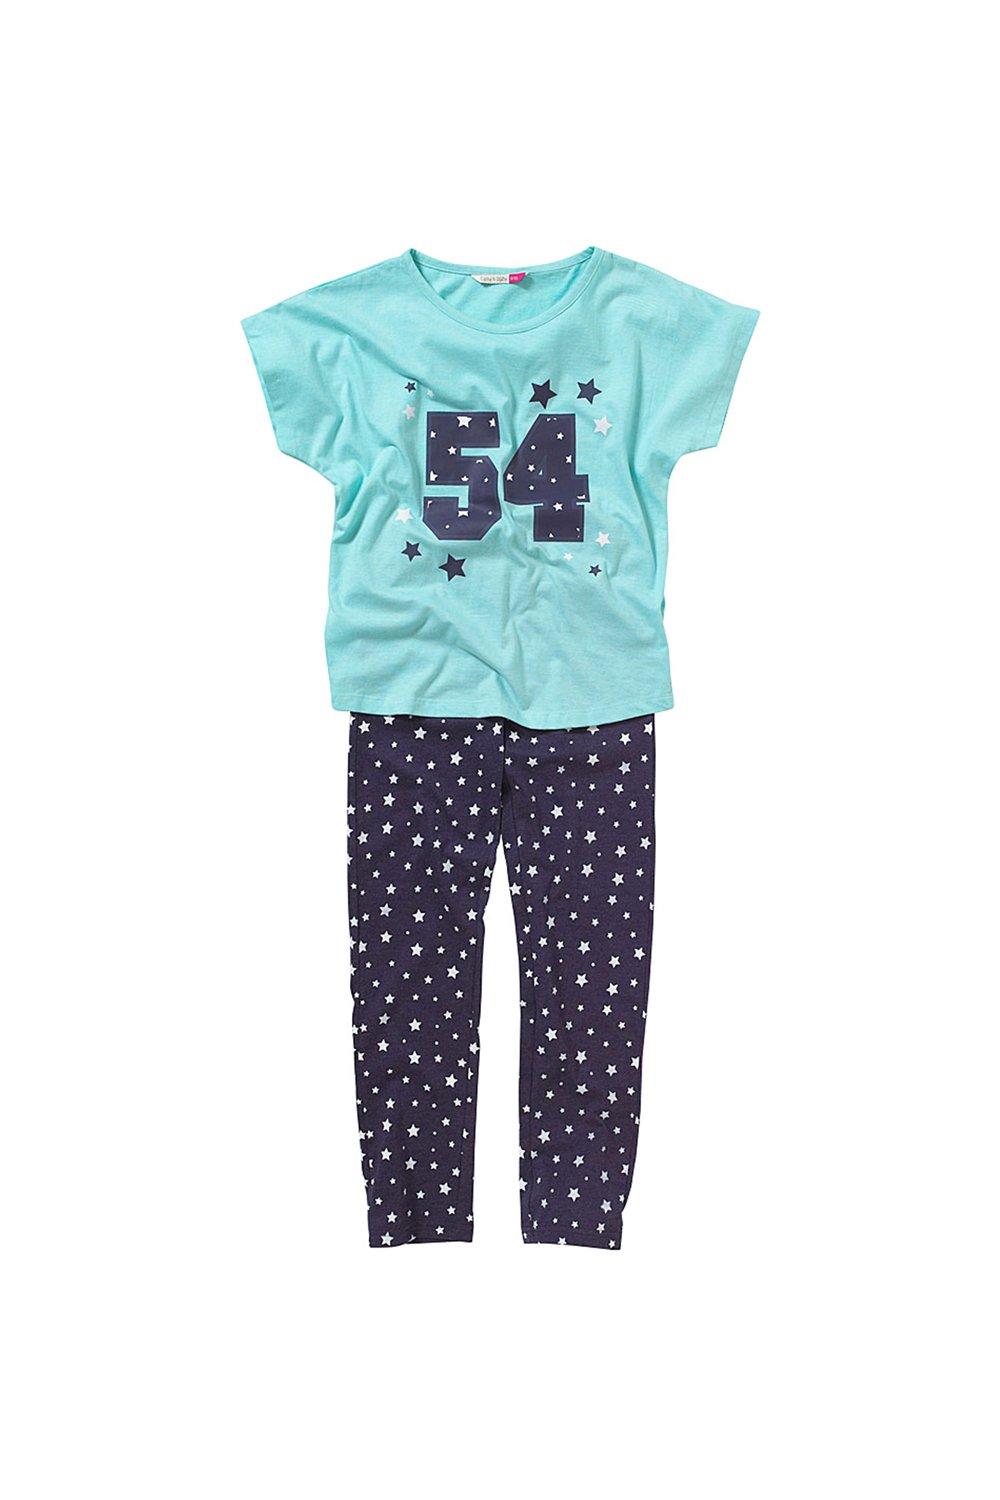 цена Университетский пижамный комплект Girls 54 Cozy n Dozy, синий